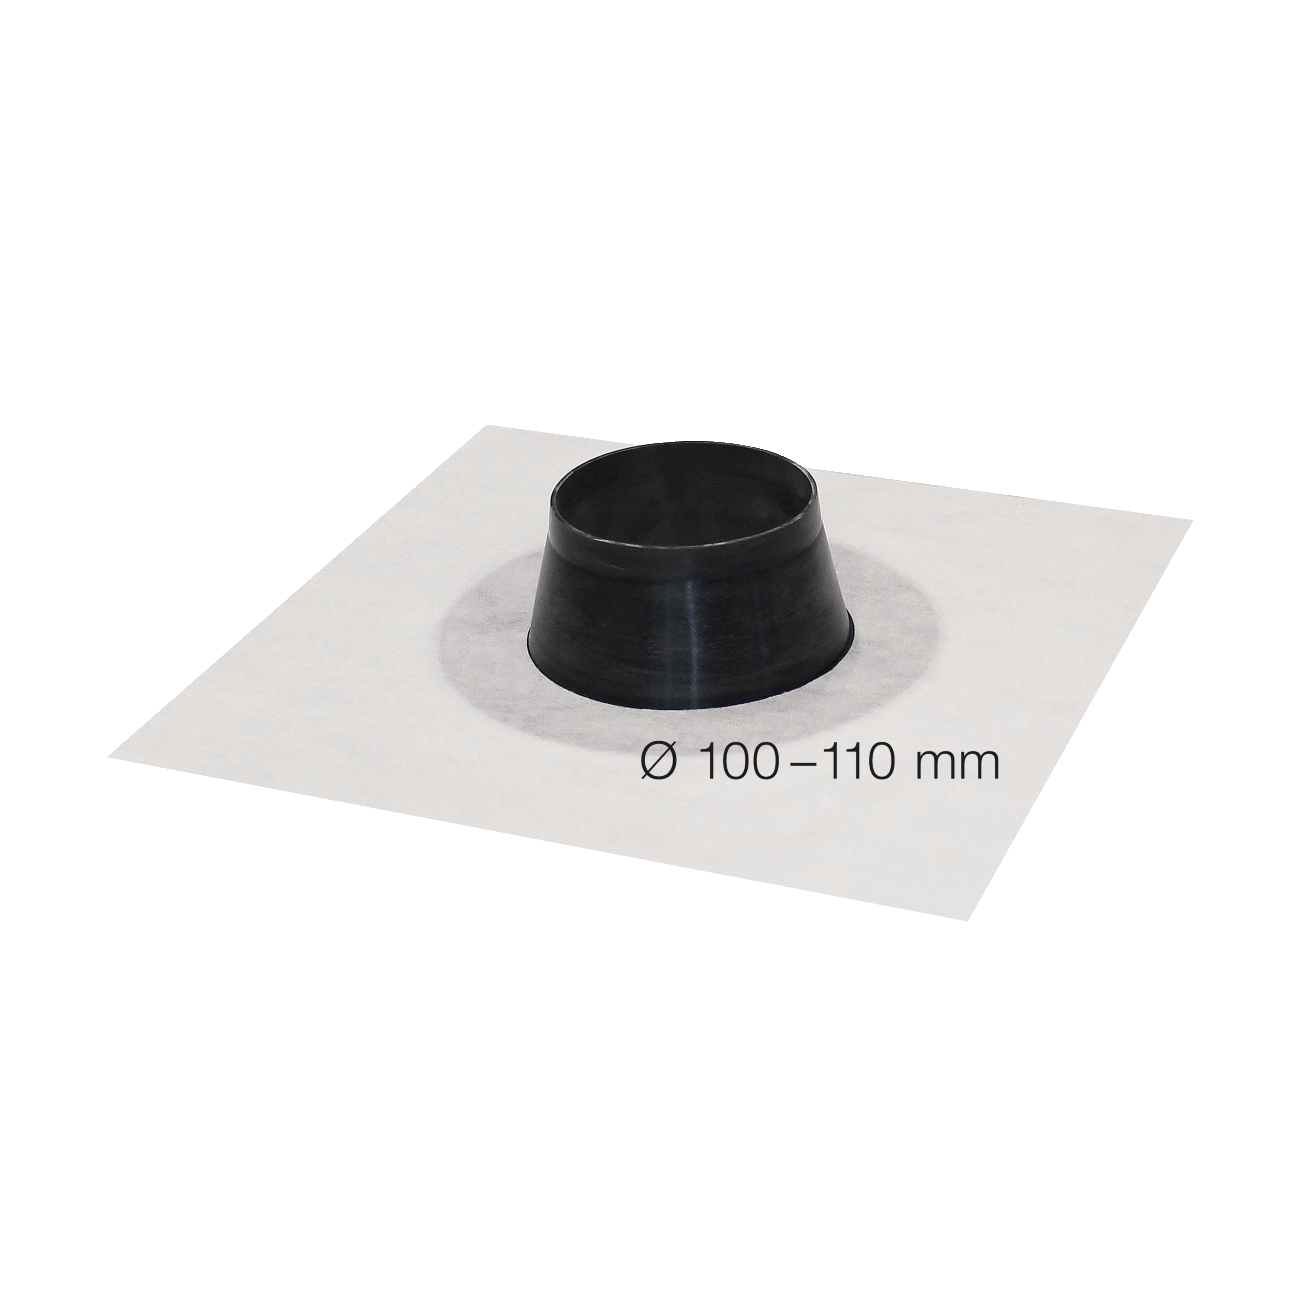 SIGA Fentrim manchette blanche diamètre 100-110mmm, pour la pénétration du tube